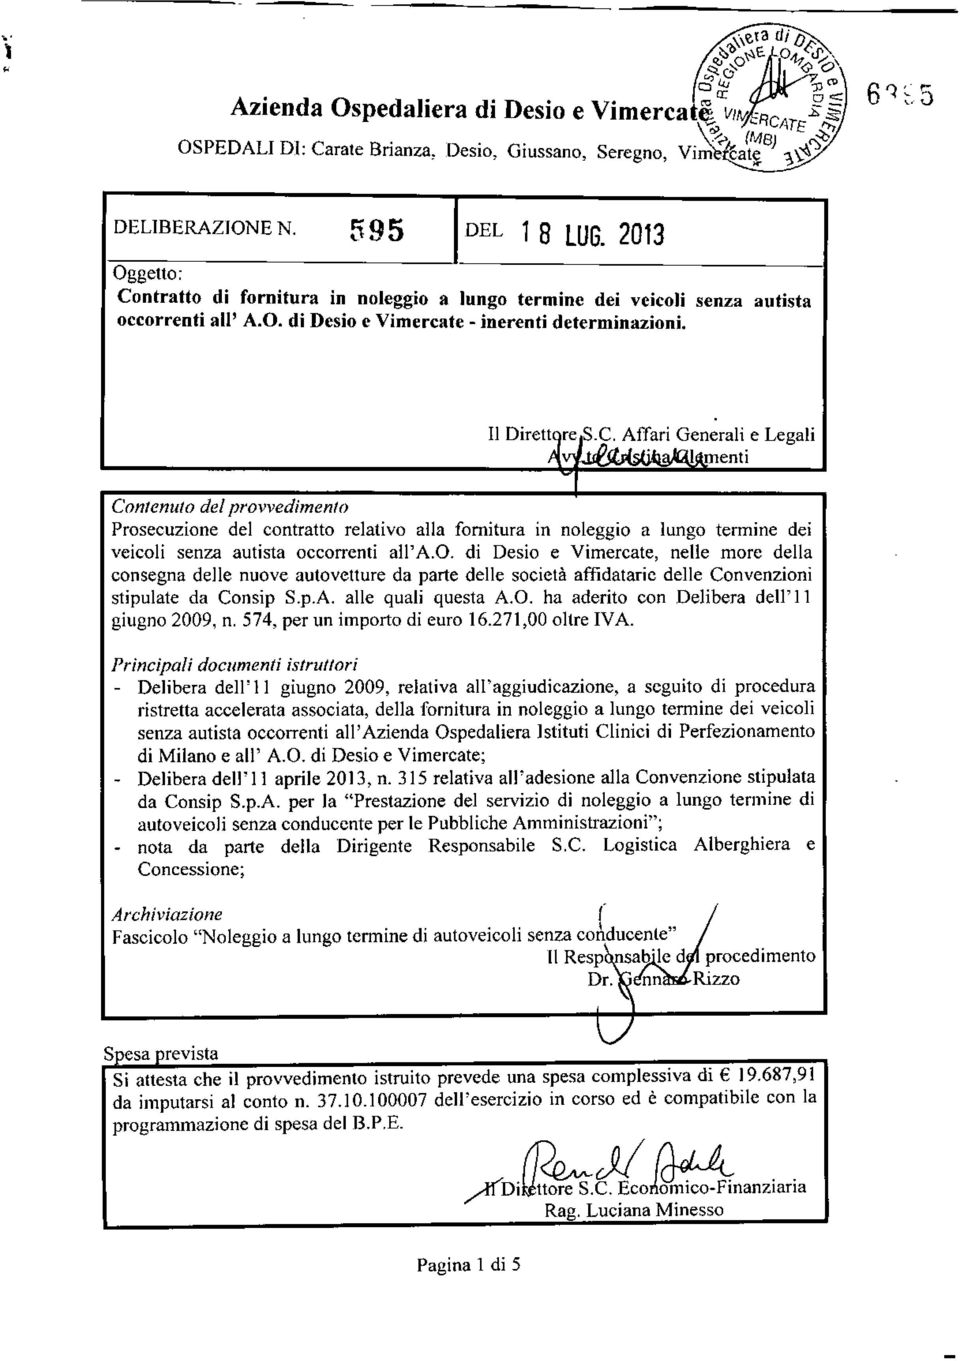 2013 Oggetto: Contratto di fornitura in noleggio a lungo termine dei veicoli senza autista occorrenti all' A.O. di Desio e Vimercate - inerenti determinazioni.